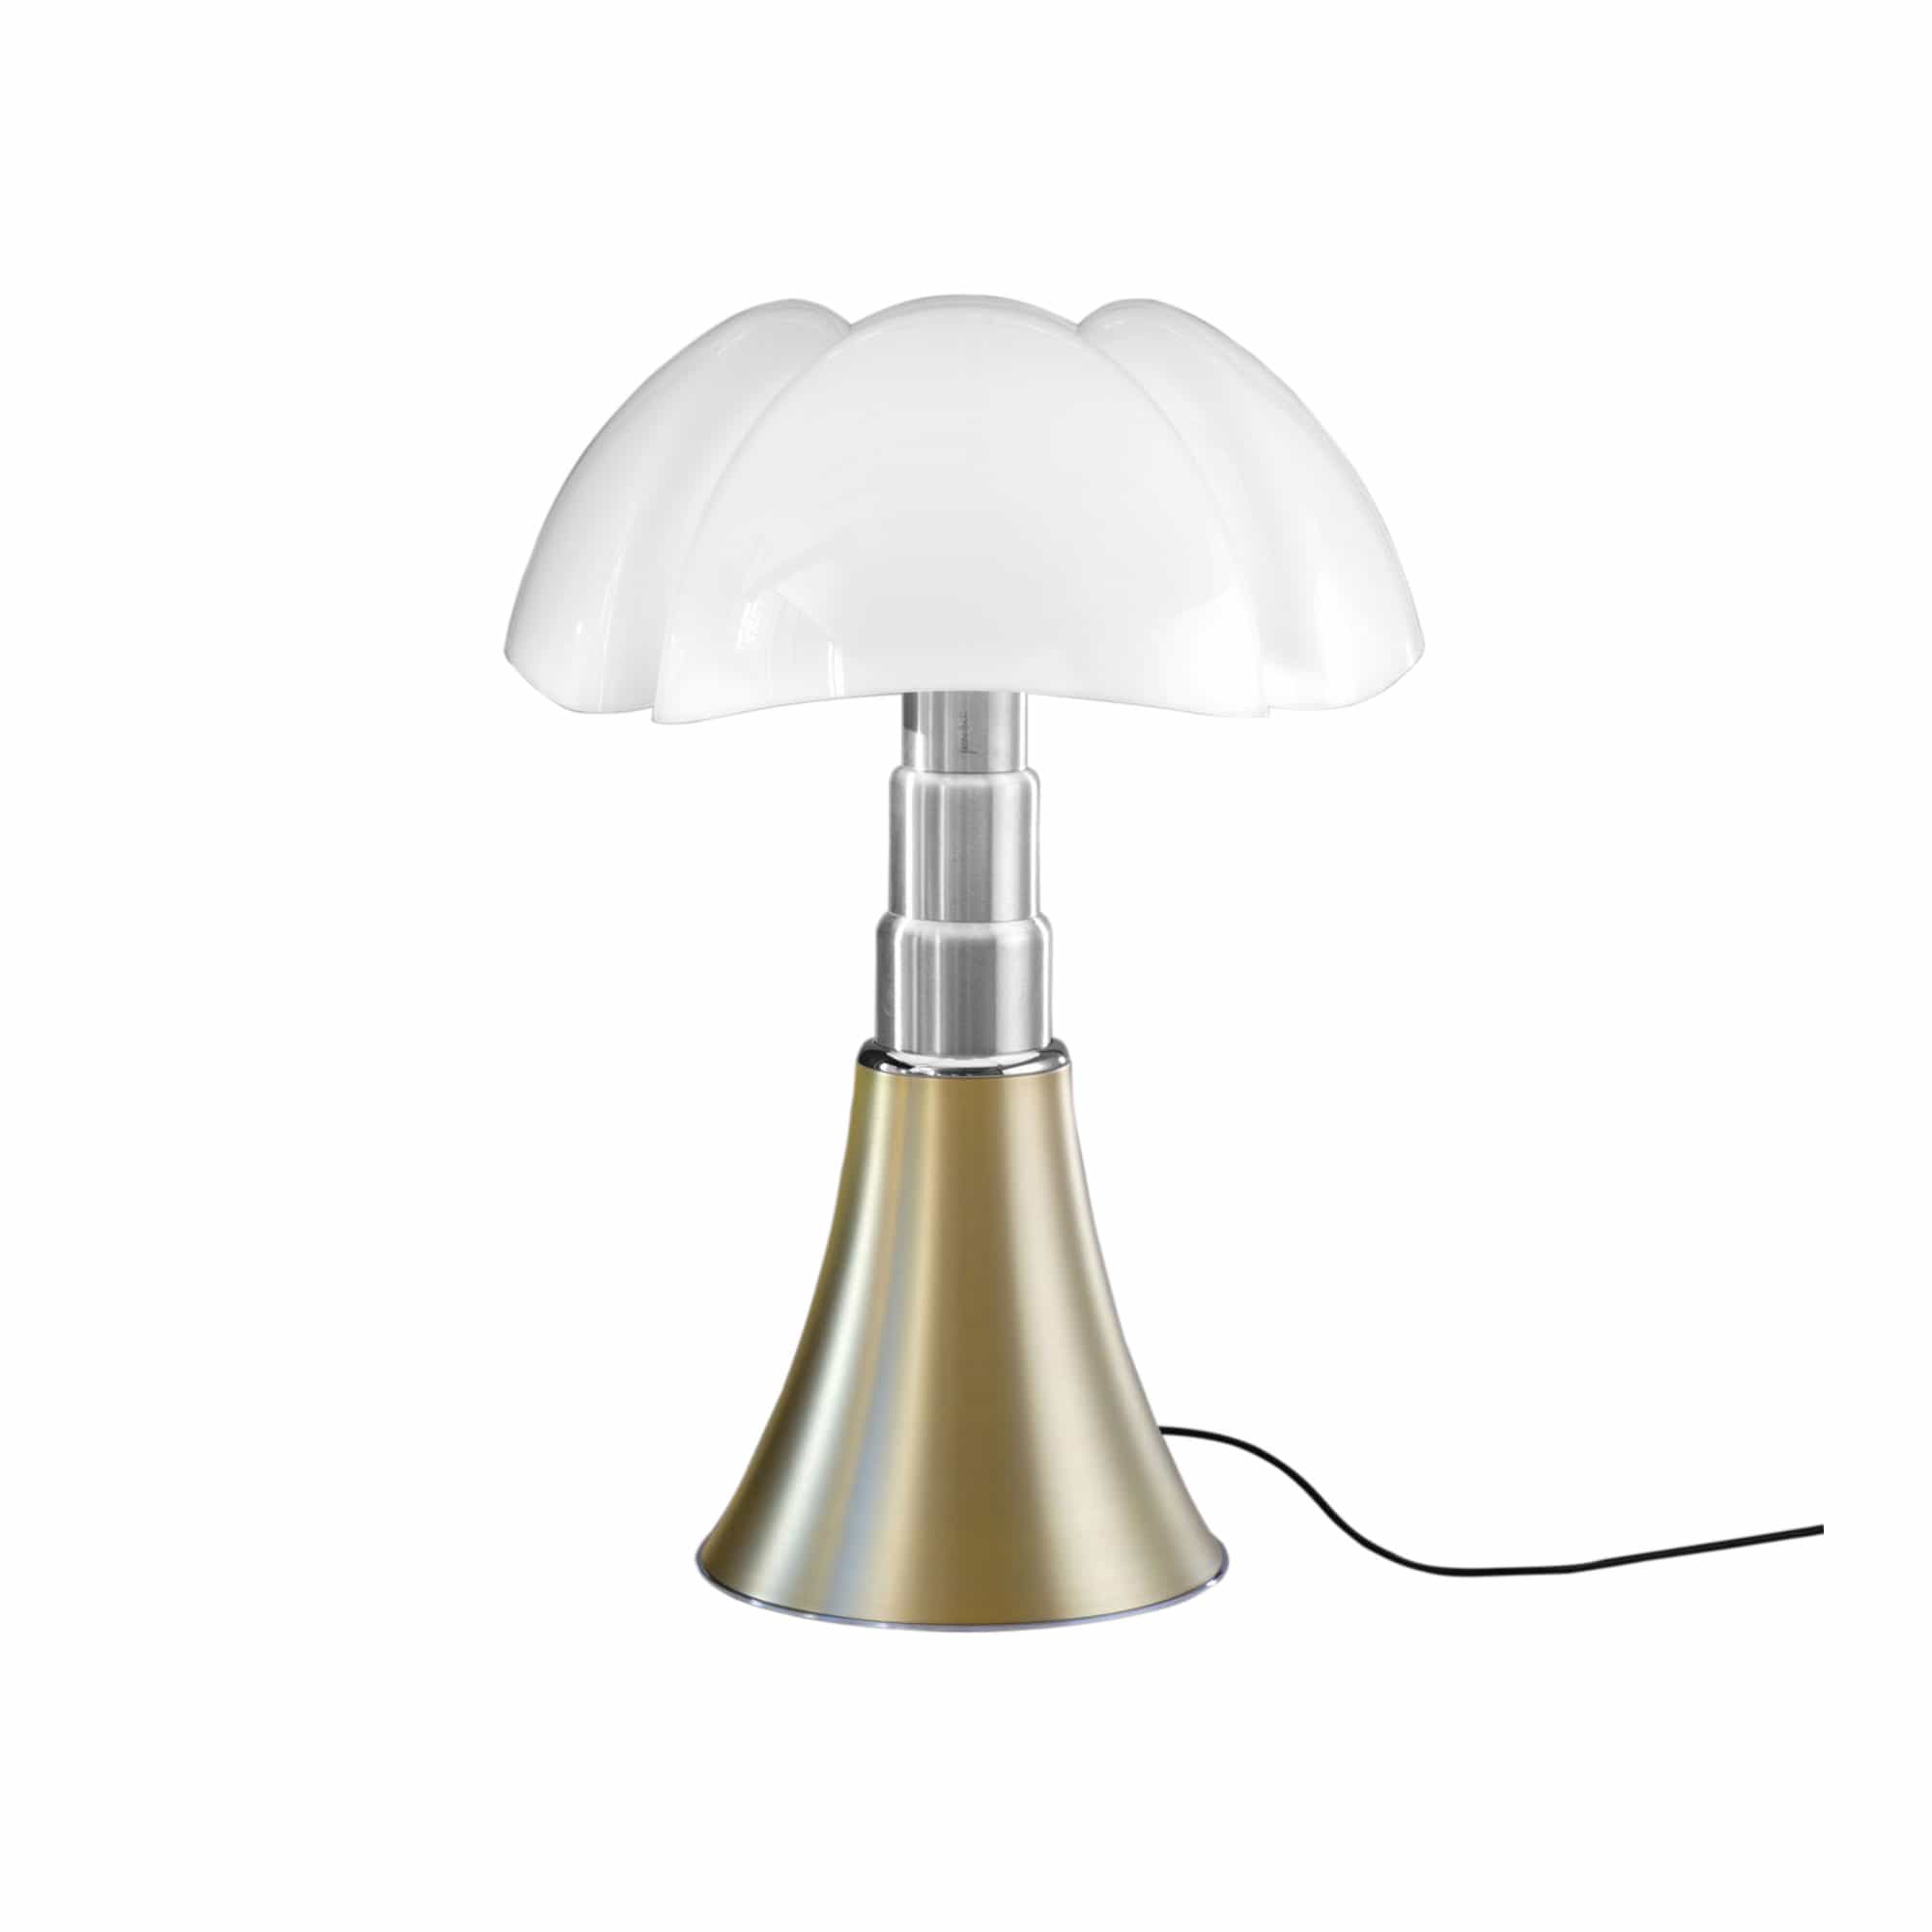 Pipistrello Table Lamp Brass - Ej dimbar